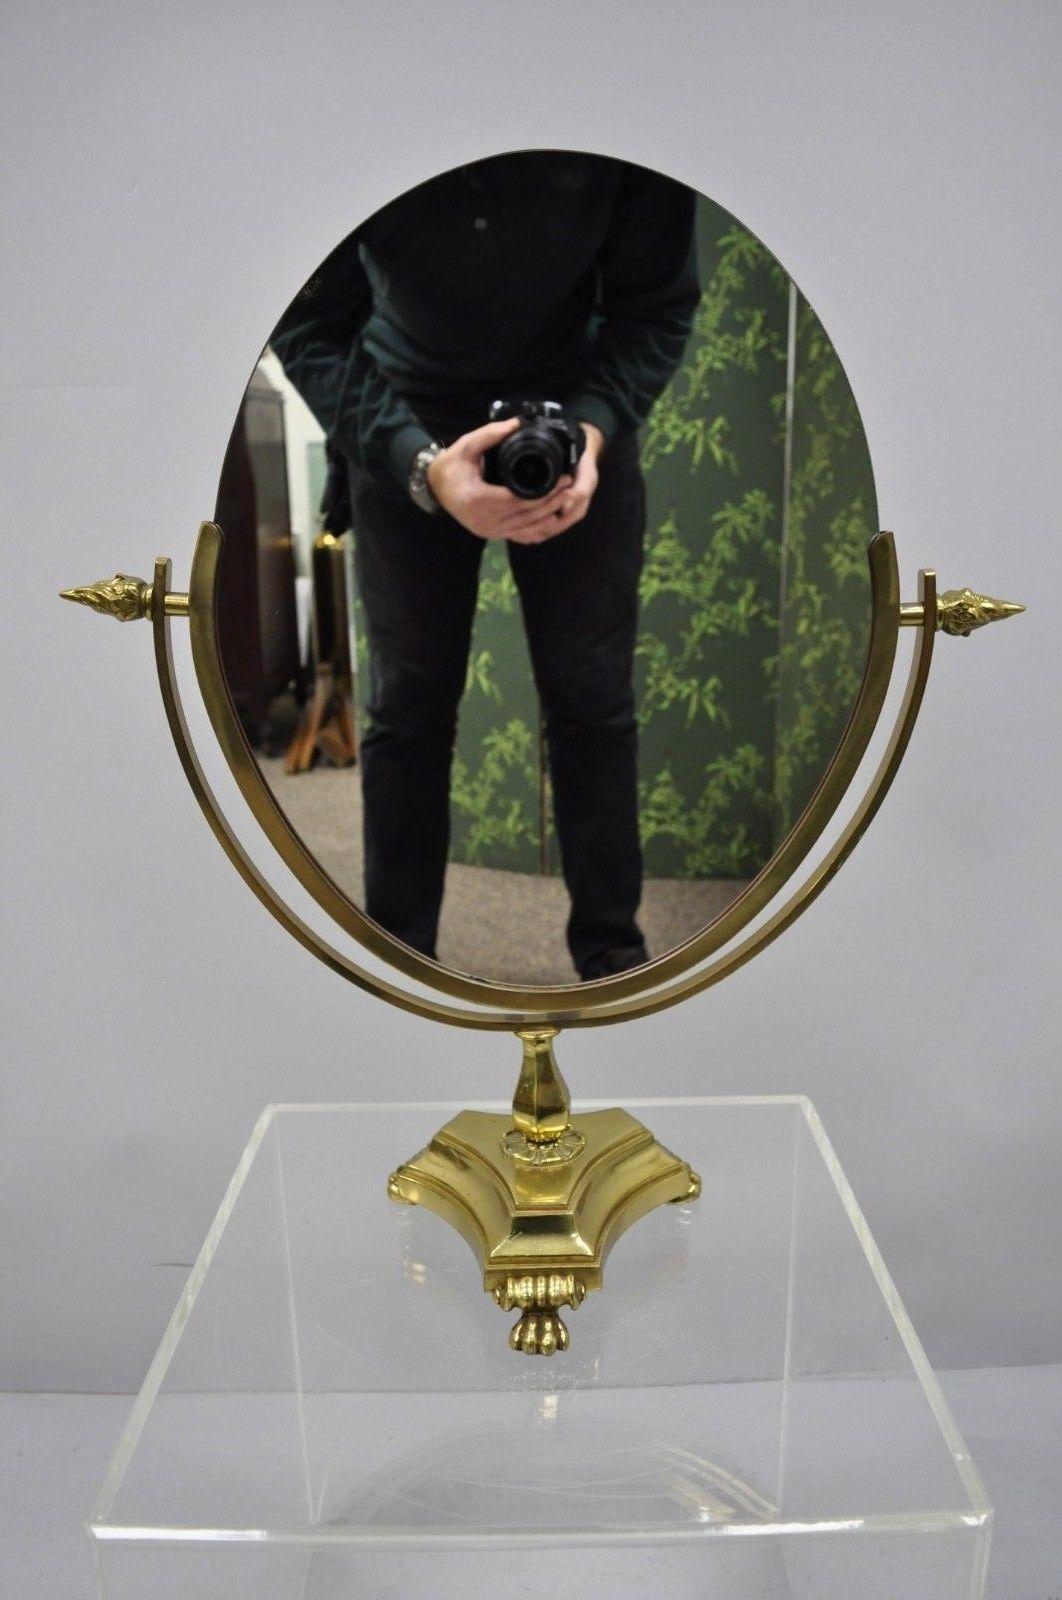 Antique table de toilette ovale de style empire français avec pieds en laiton et double miroir. Cet article comporte 3 pieds en laiton, un miroir sur les deux côtés, des fleurons en forme de flamme, un style et une forme remarquables, vers le début